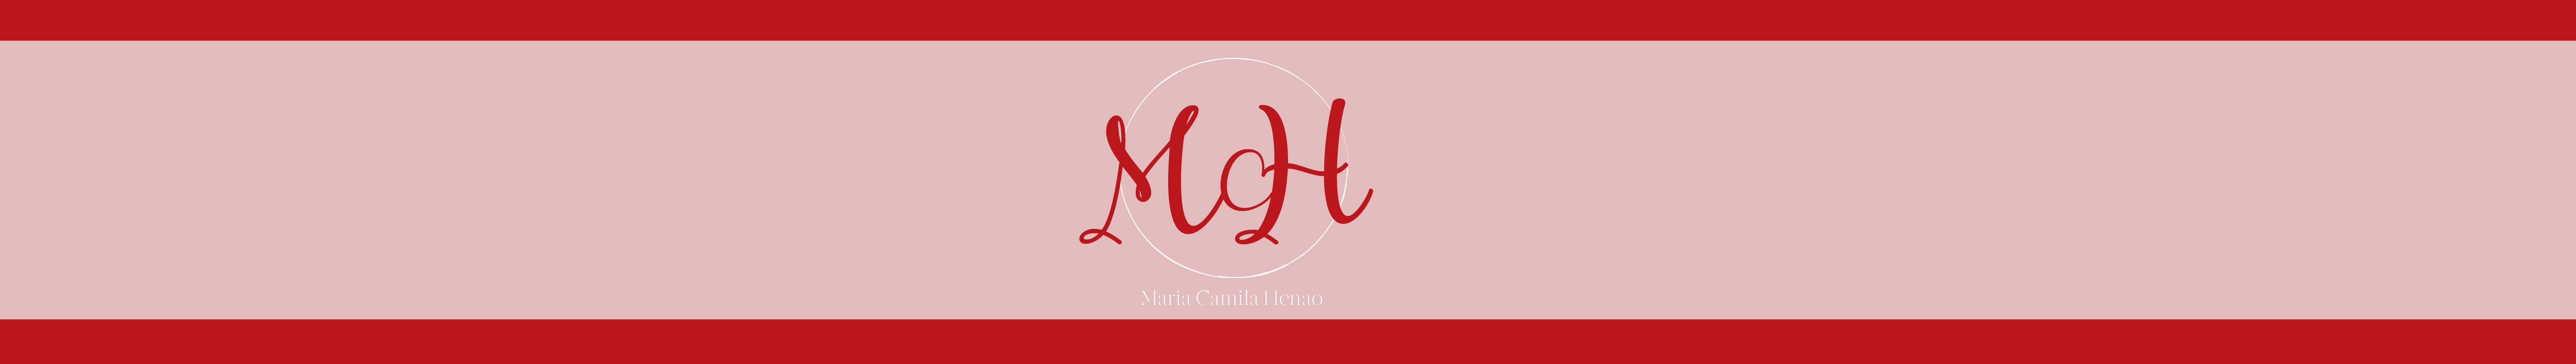 Banner de perfil de Maria Camila Henao